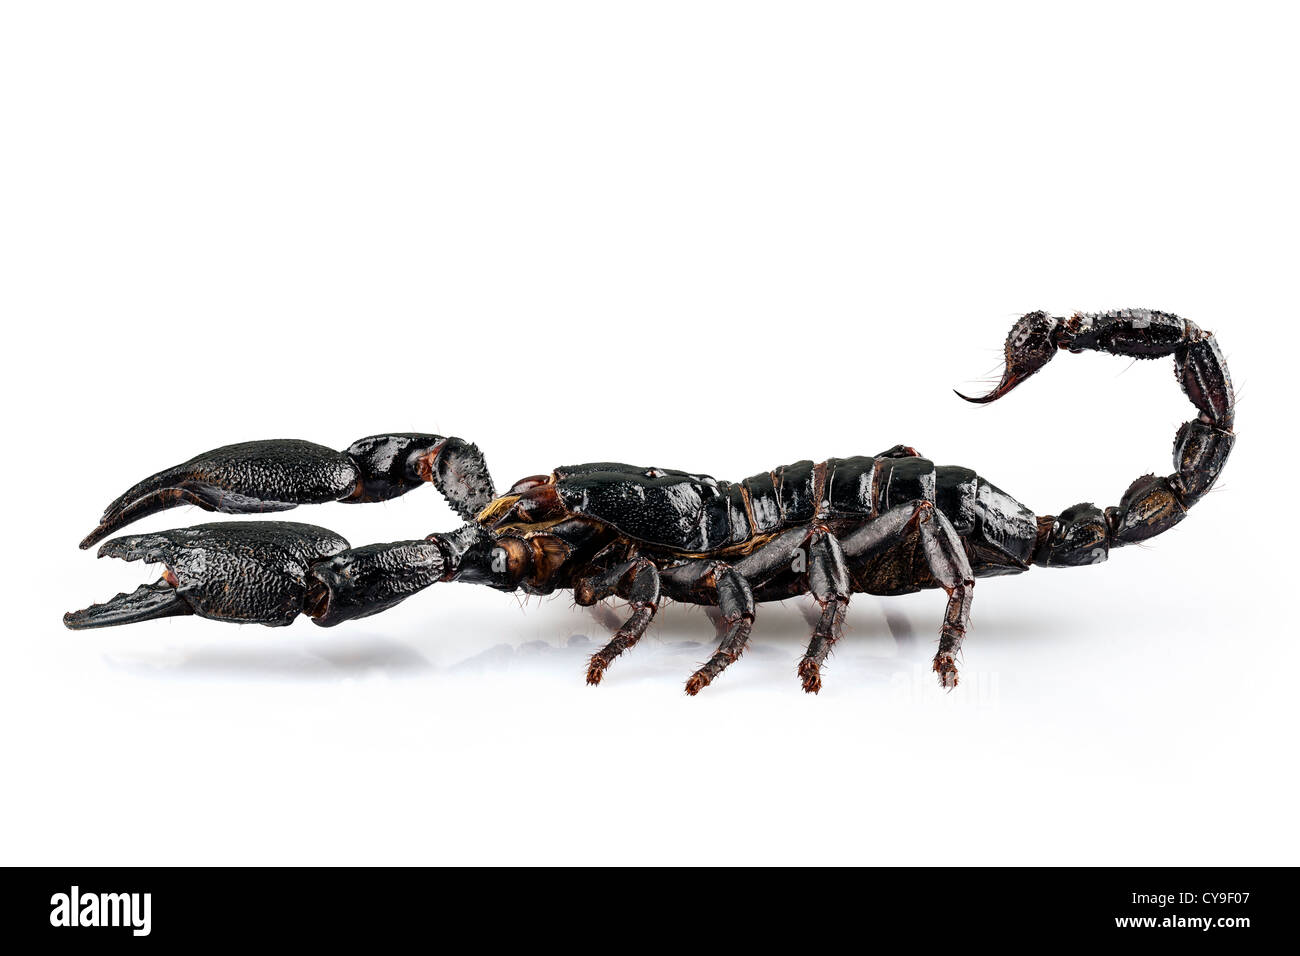 Scorpione nero specie Heterometrus cyaneus Foto Stock